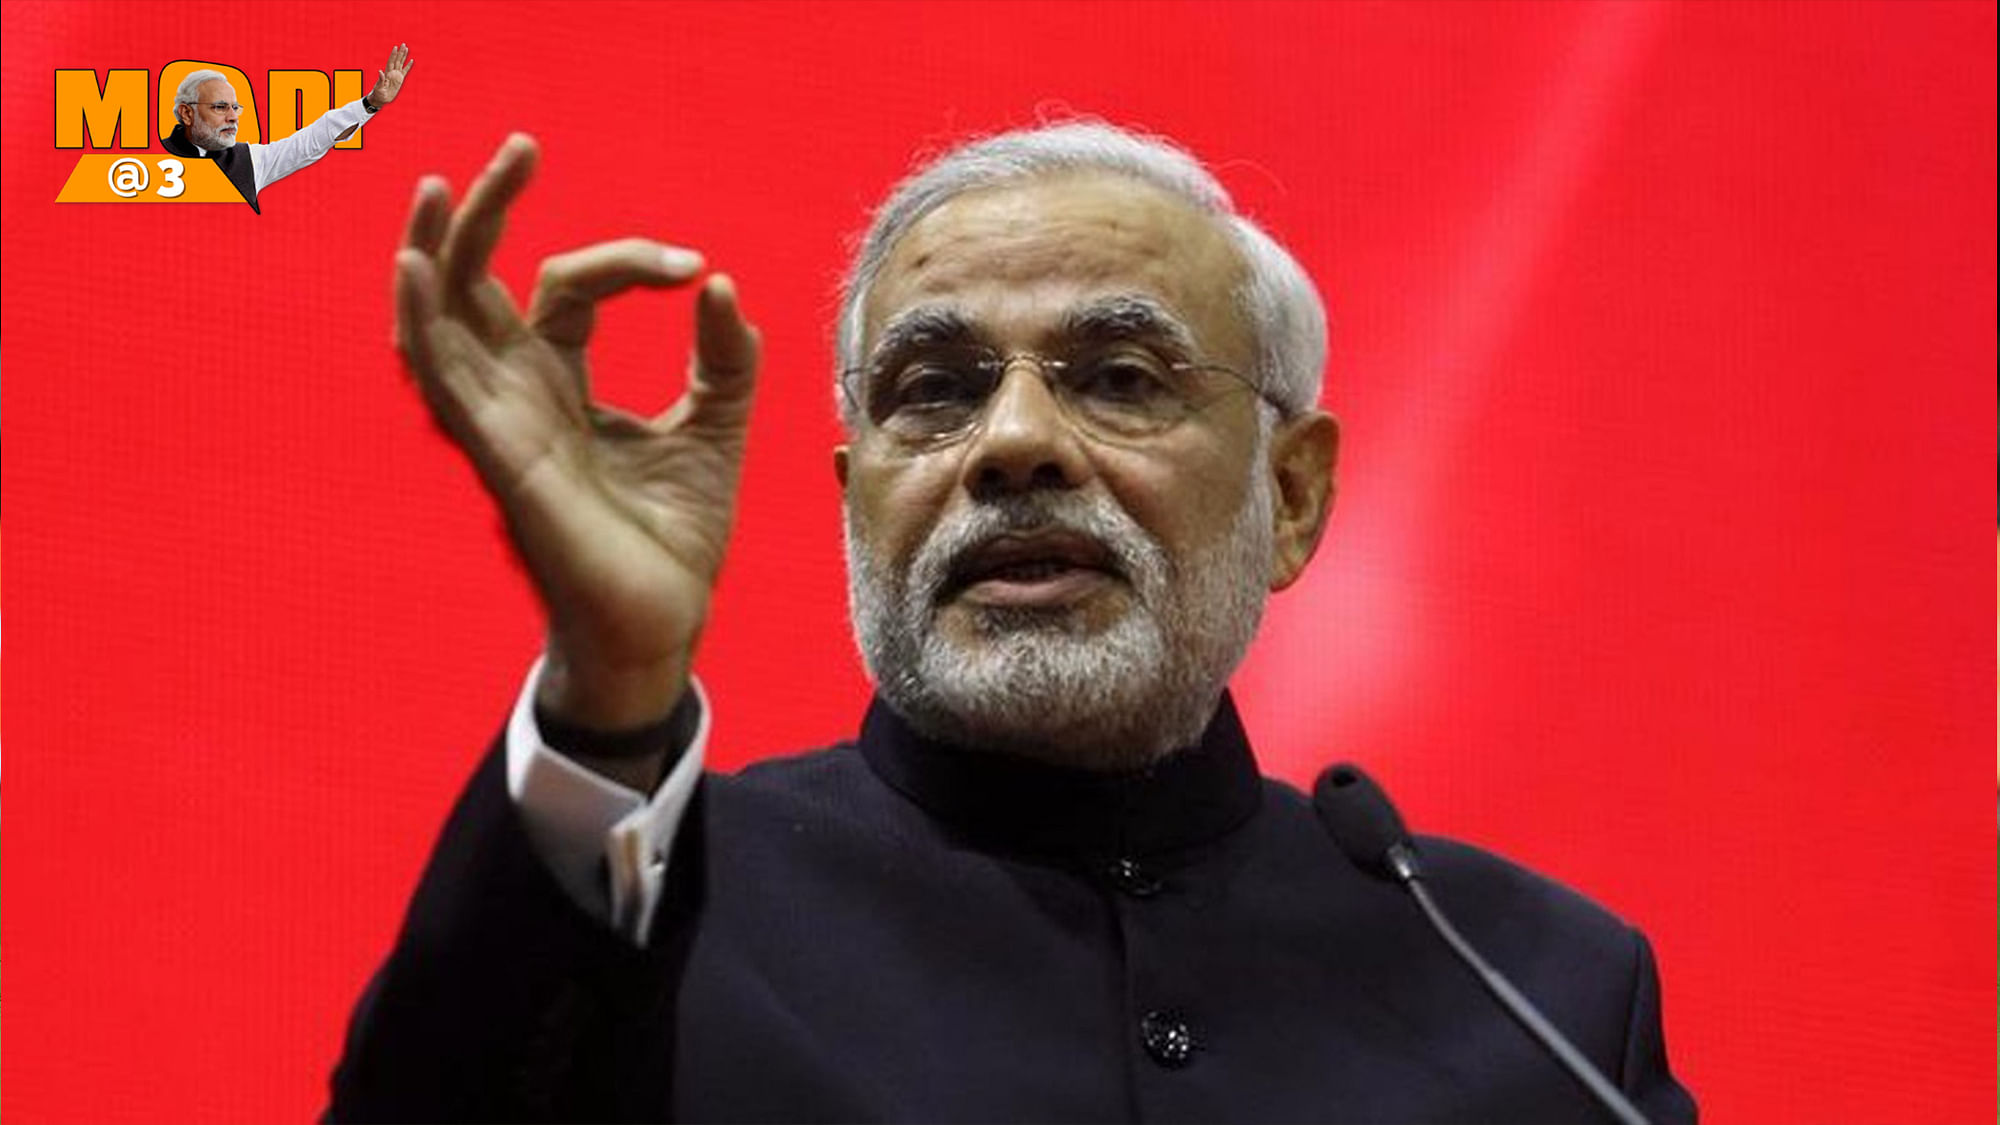 File photo of Prime Minister Narendra Modi. (Photo: Reuters)